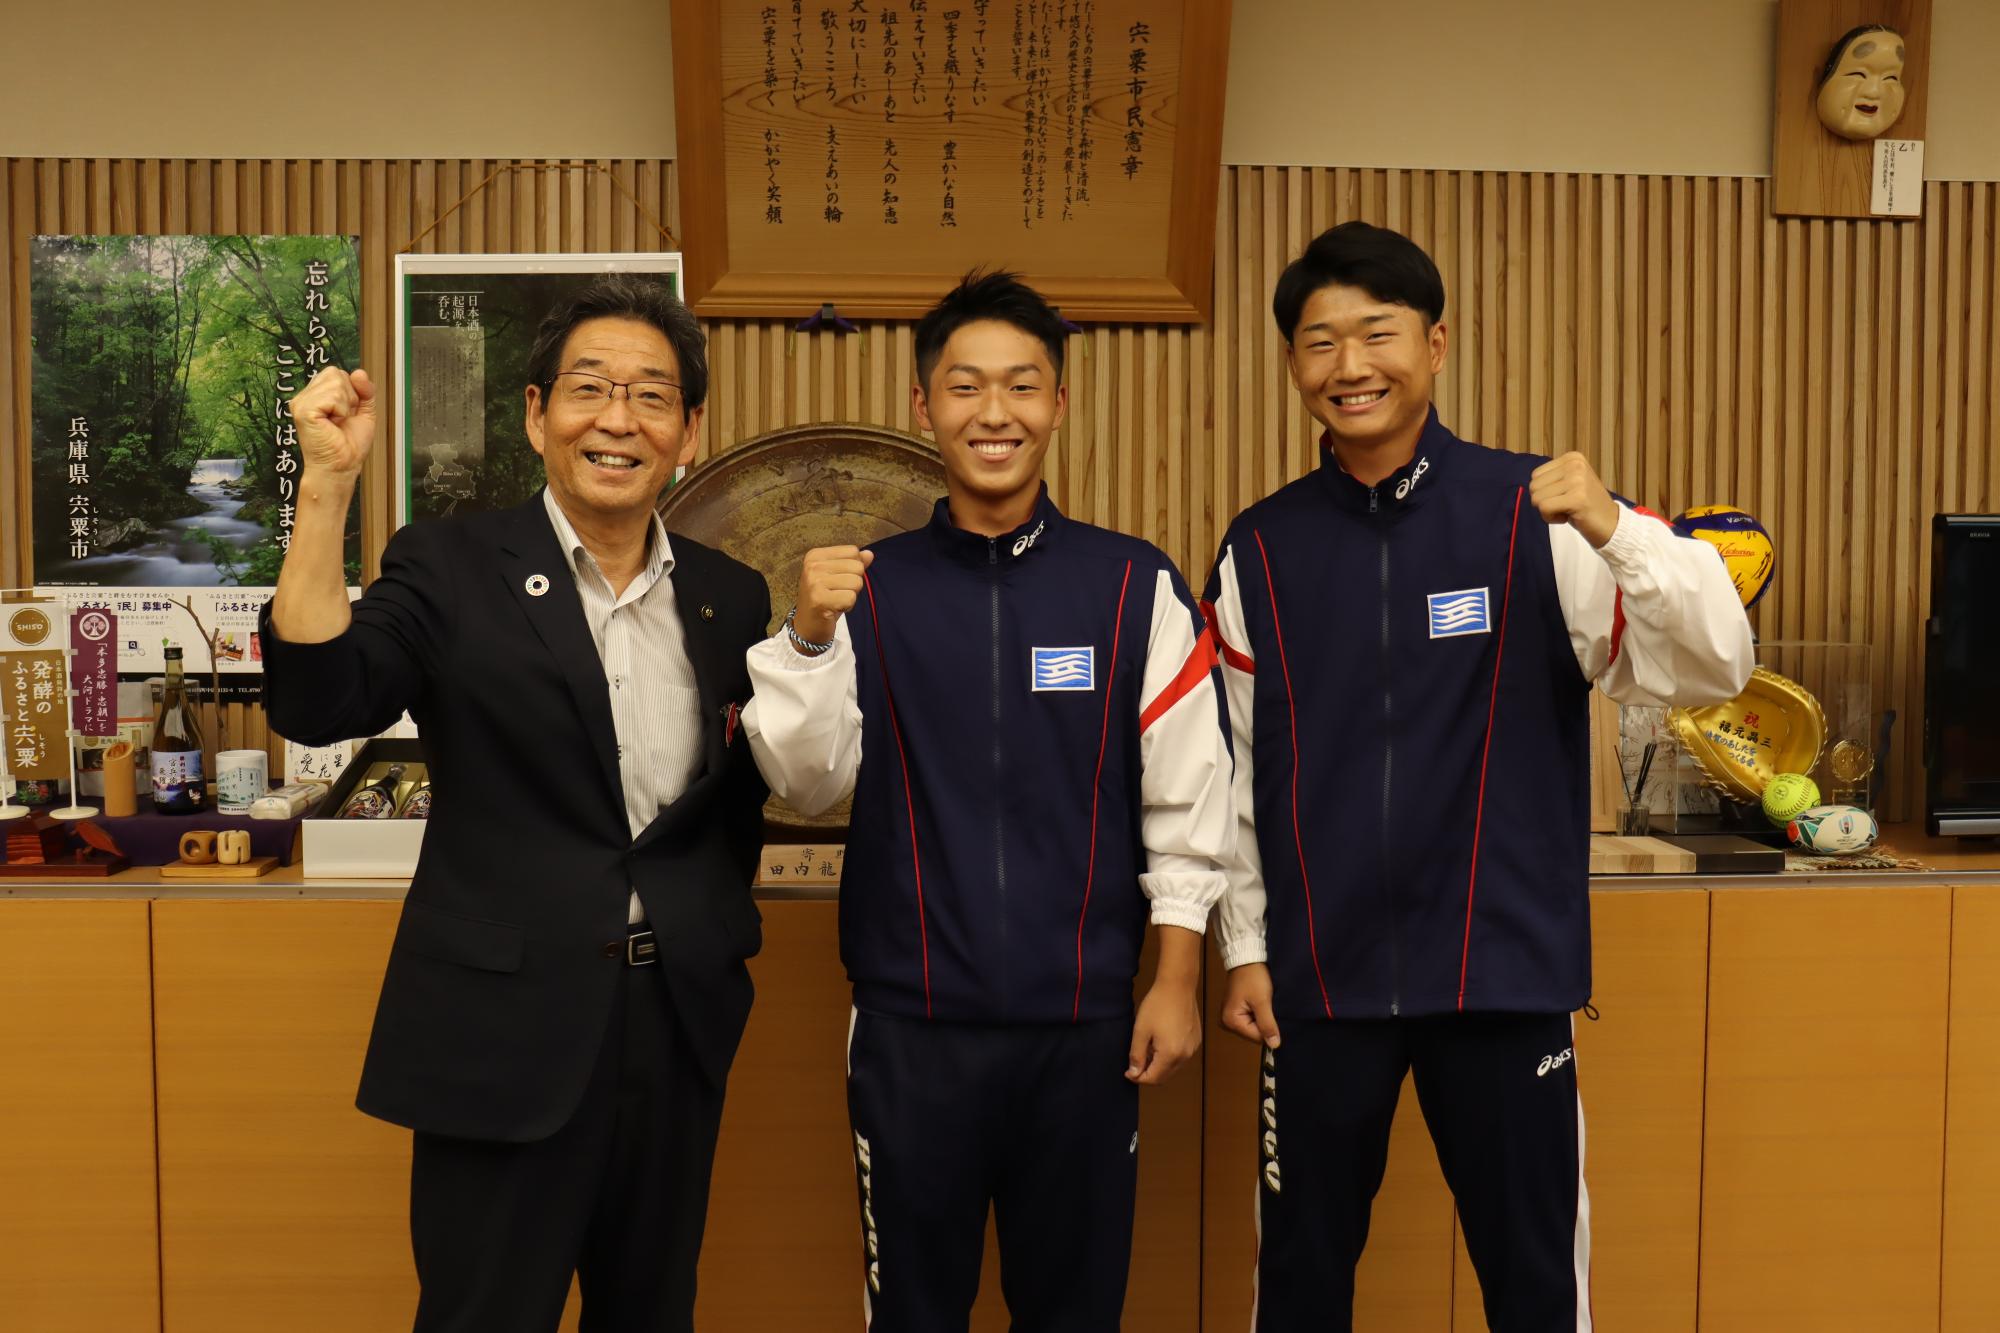 左から順に福元市長、中川さん、早川さんが市長室でガッツポーズをして並んで立っている写真